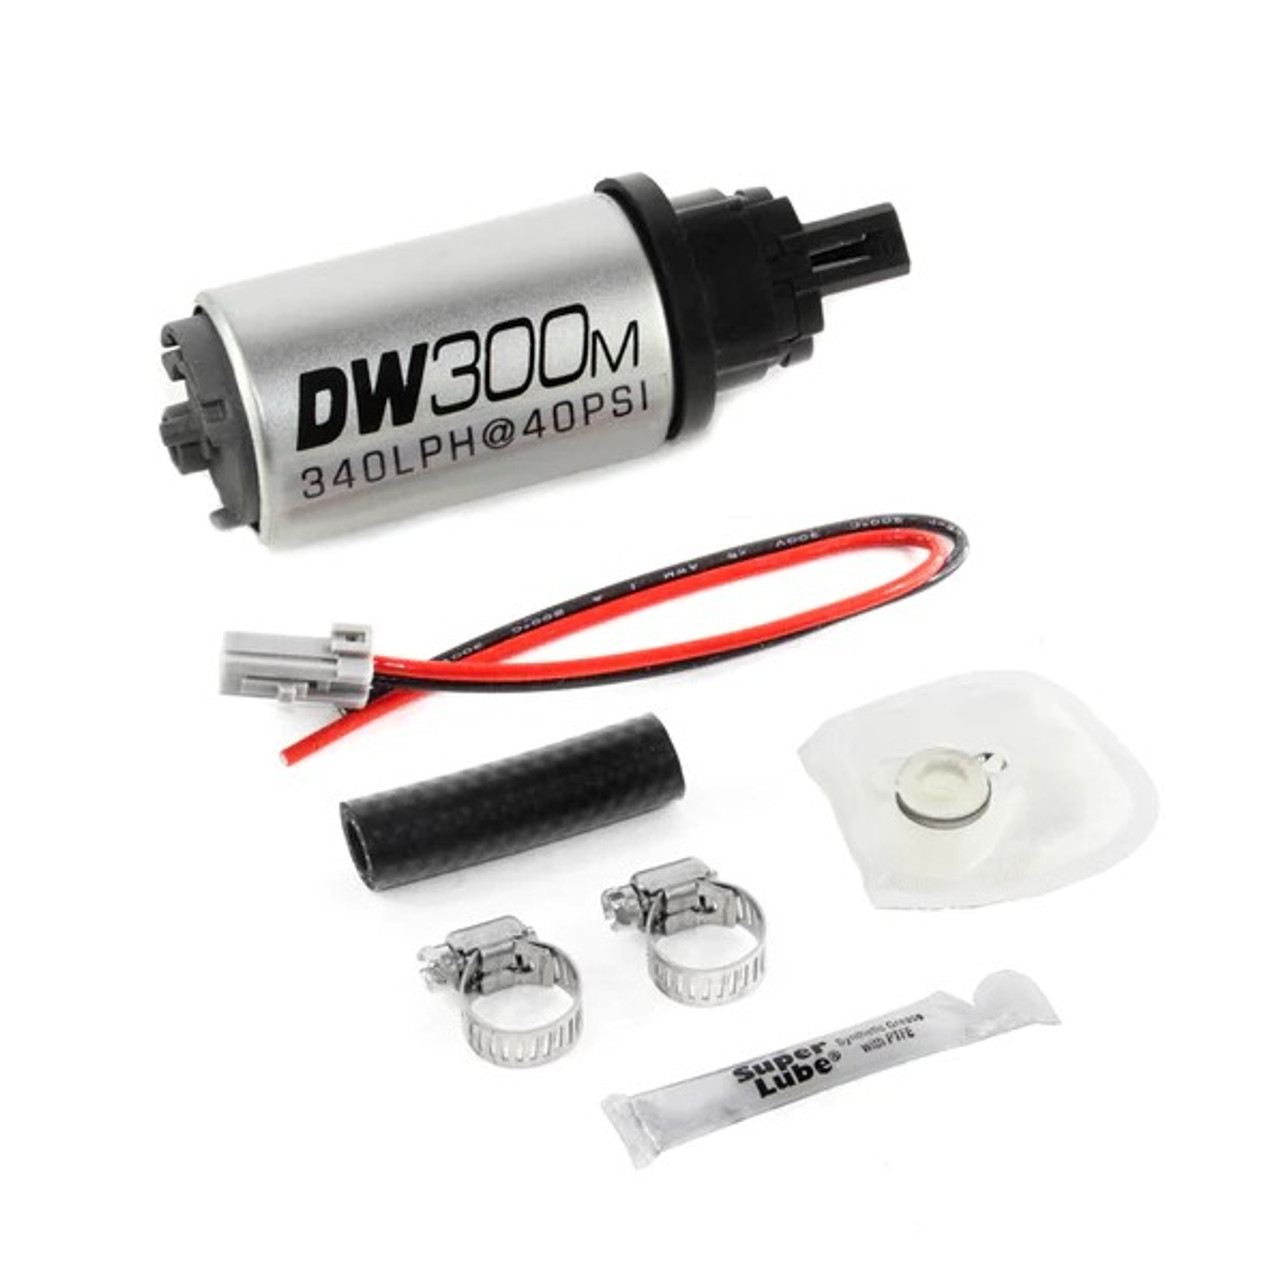 DeatschWerks DW300M In-Tank Fuel Pump w/ Install Kit For 05-10 Mustang - 9-305-1034